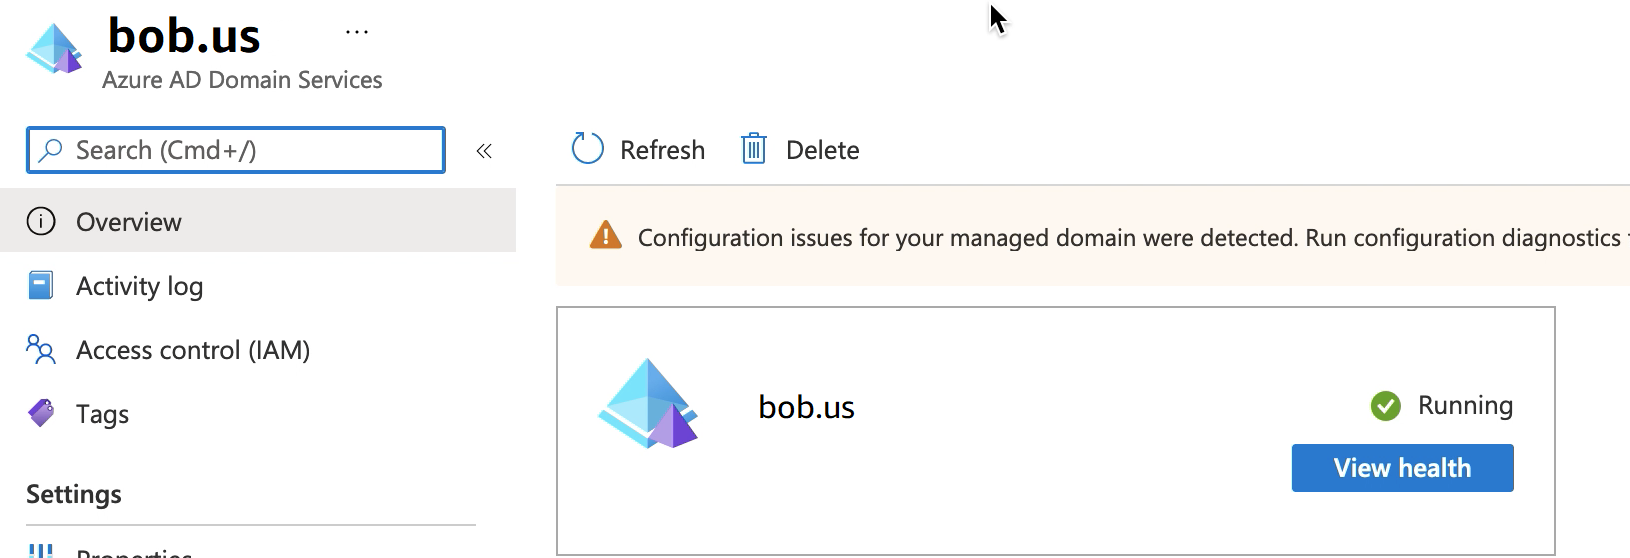 顯示資源群組 bob.us 執行中的 Azure AD 網域服務畫面。